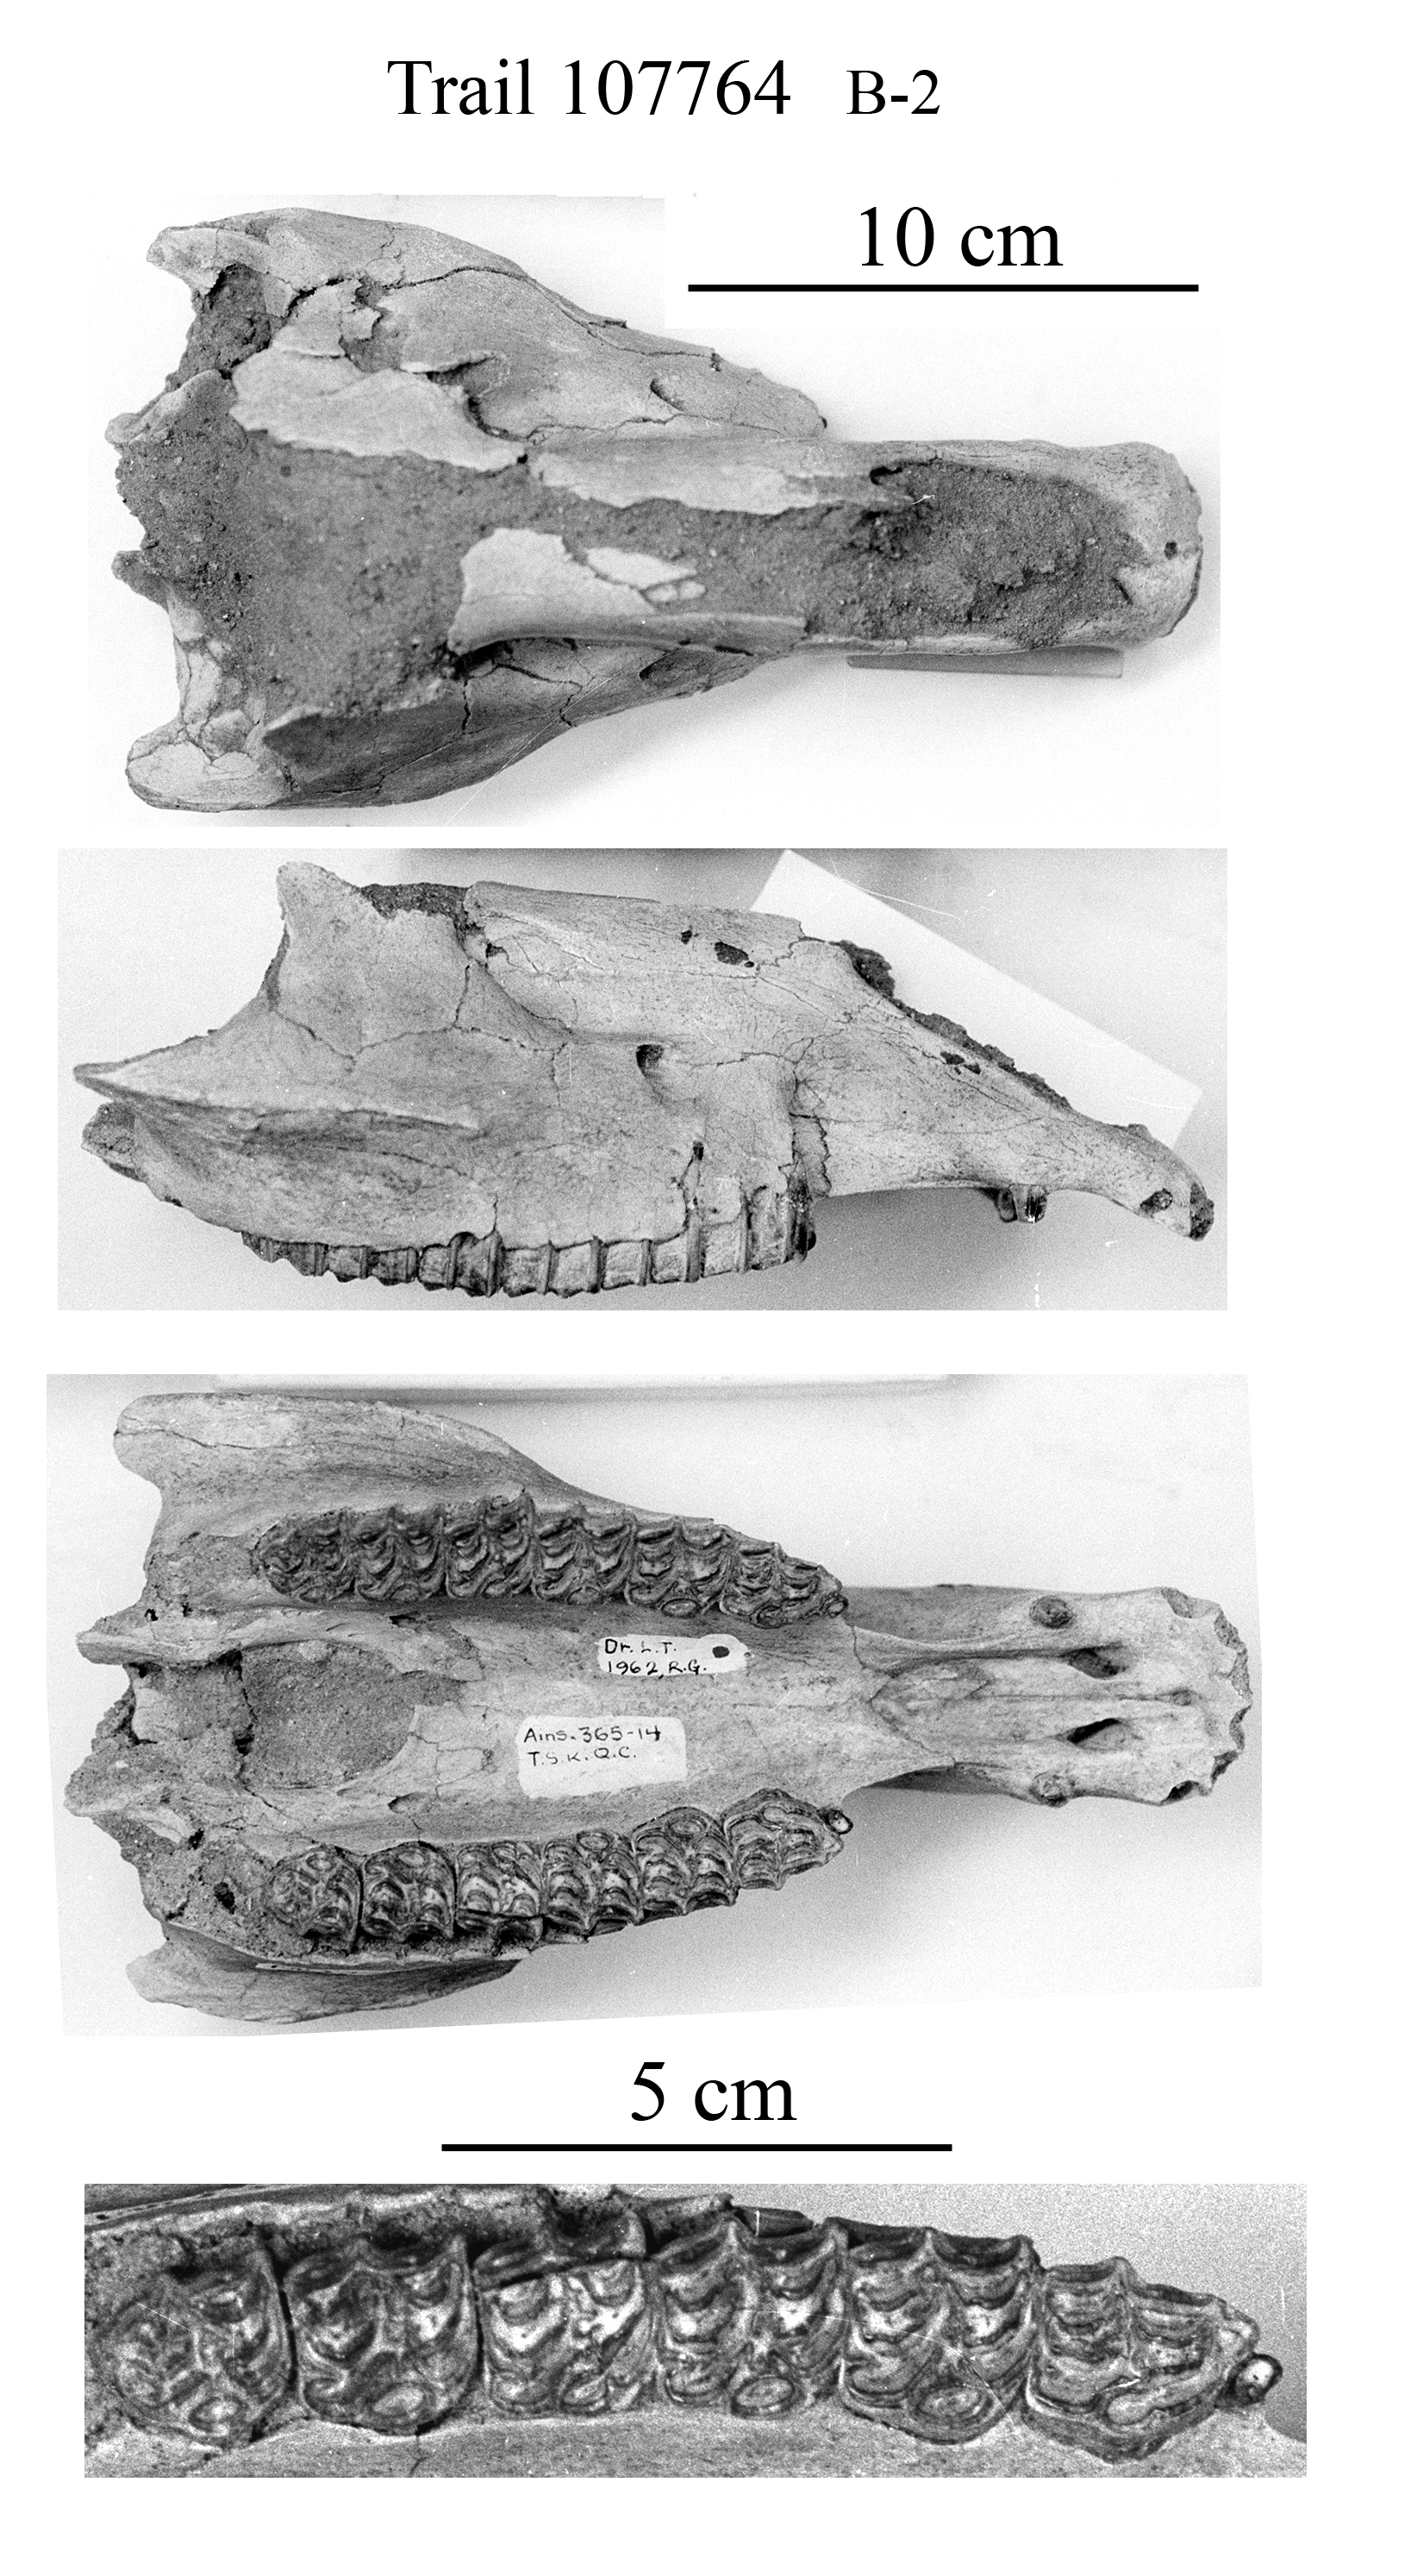 B-2 Trail Side Kat 107764 skull & upper cheek teeth